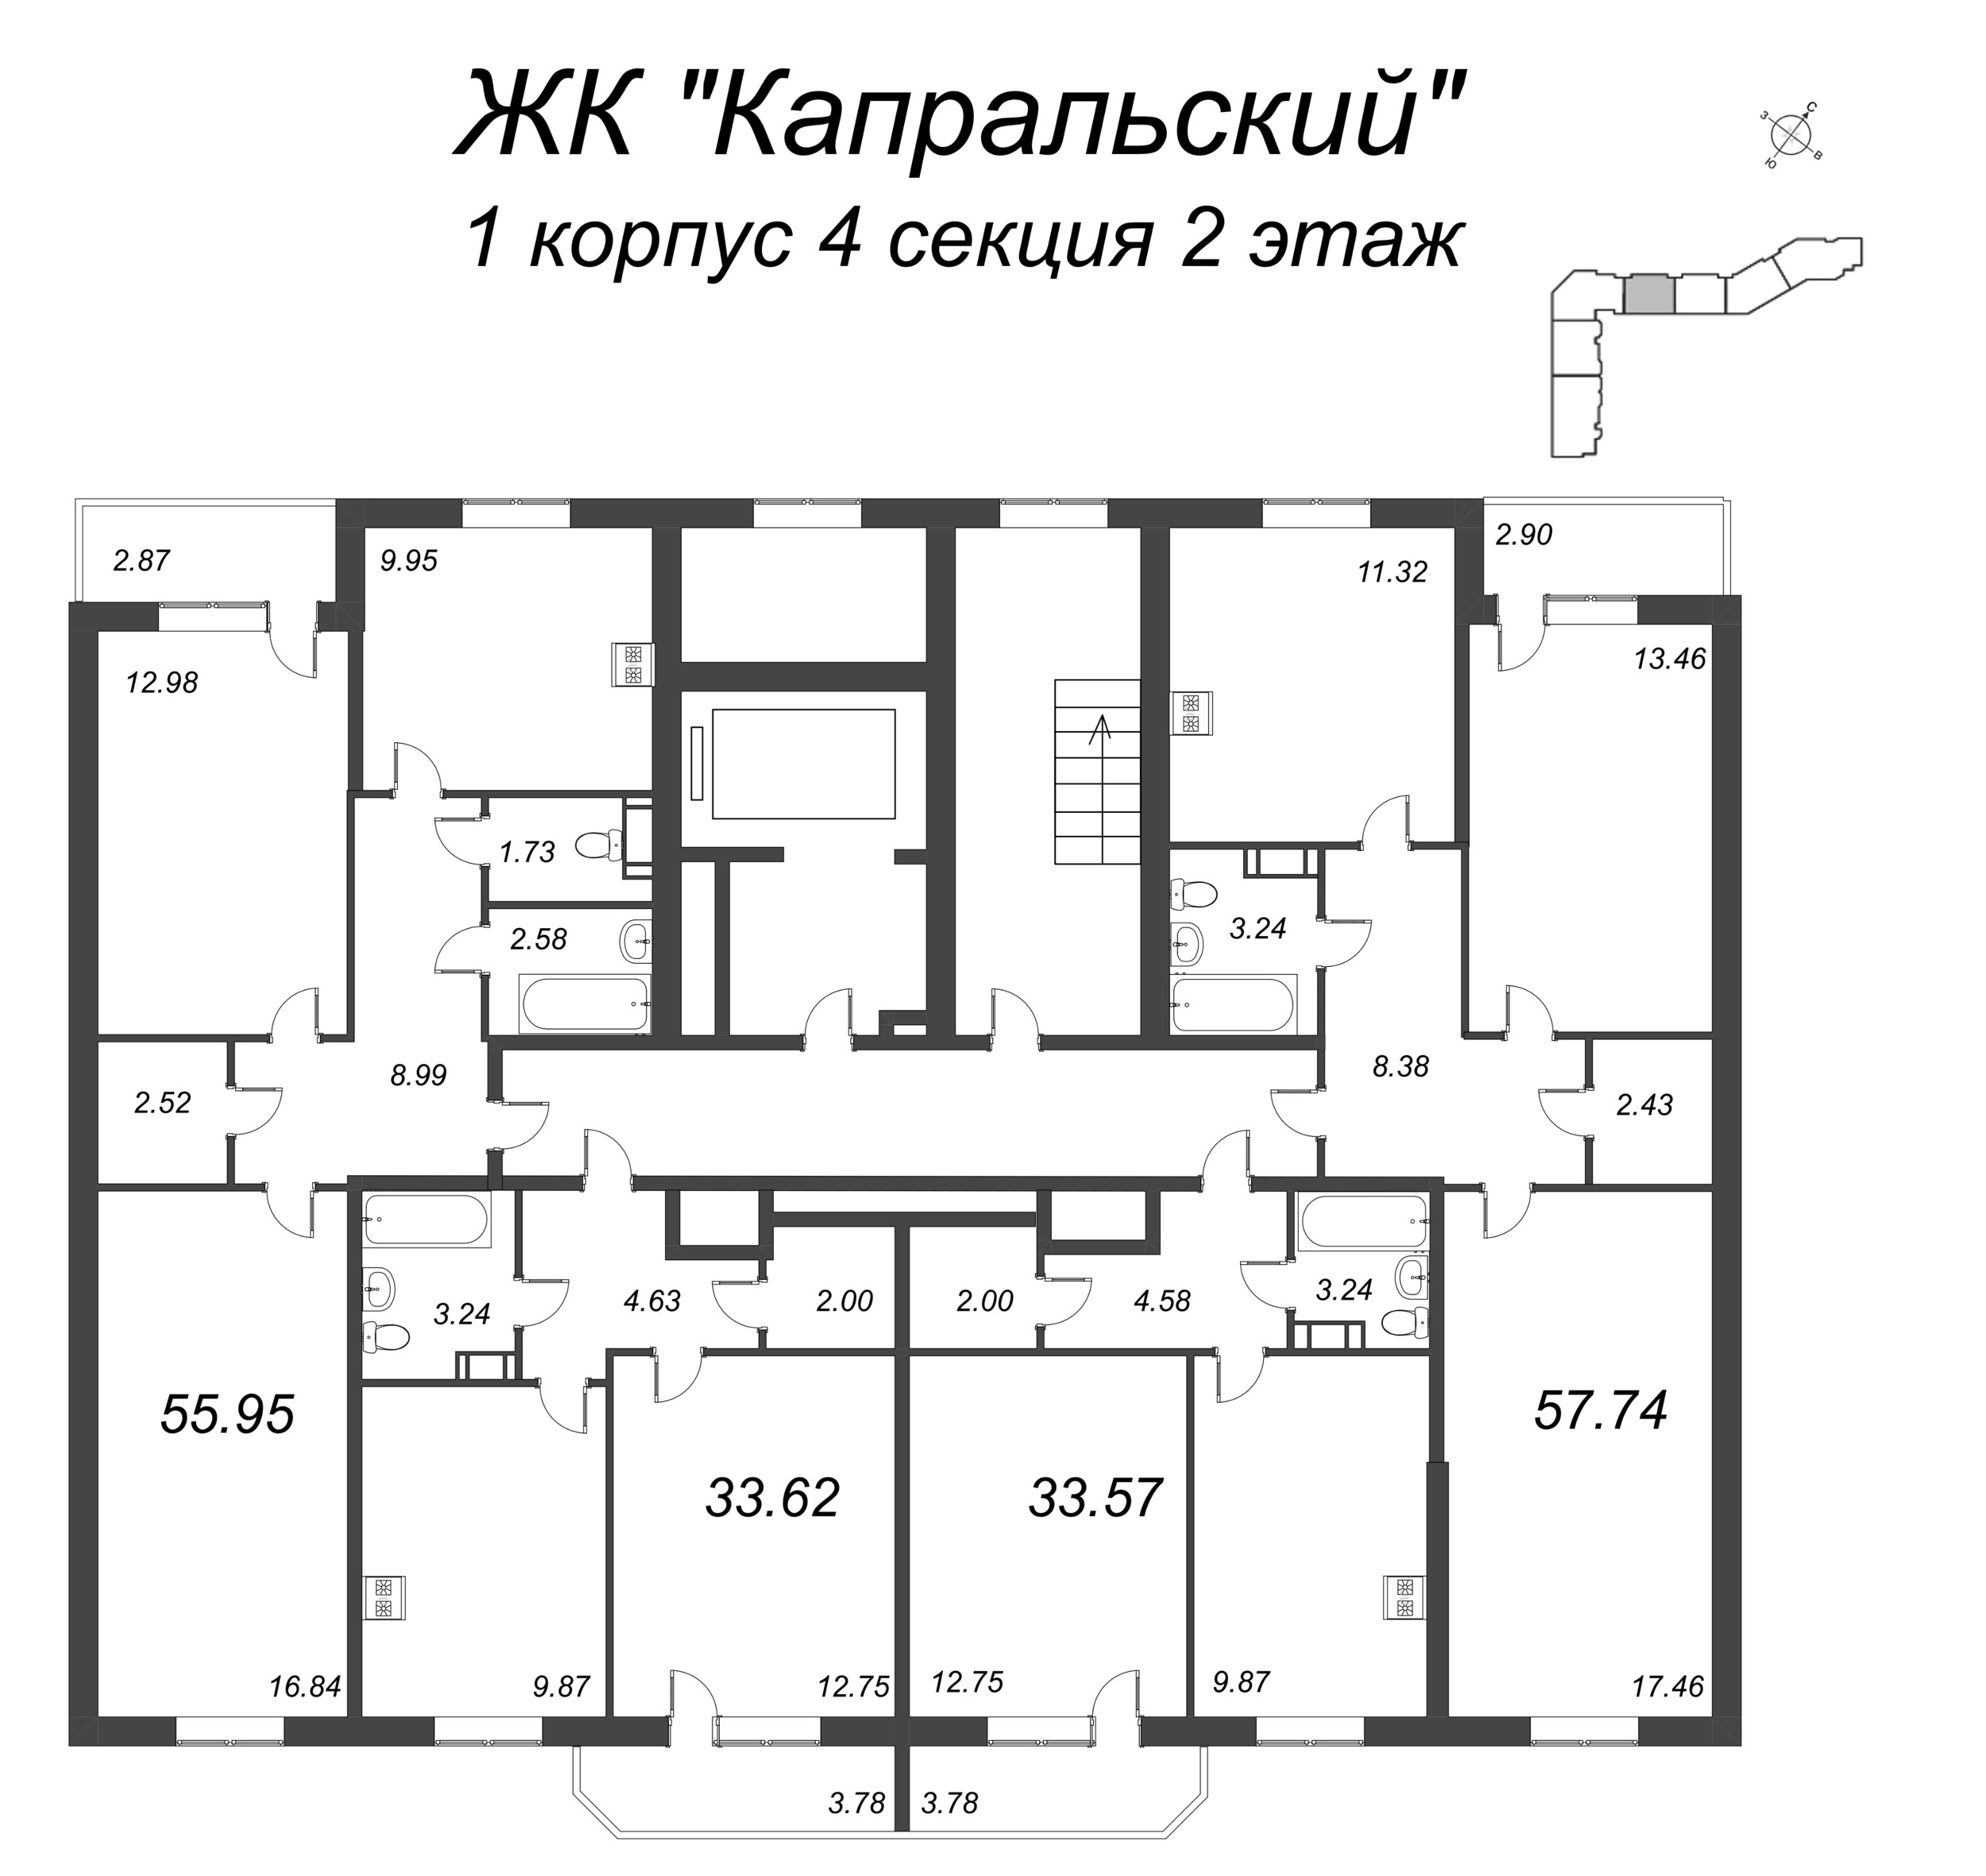 1-комнатная квартира, 33.57 м² в ЖК "Капральский" - планировка этажа